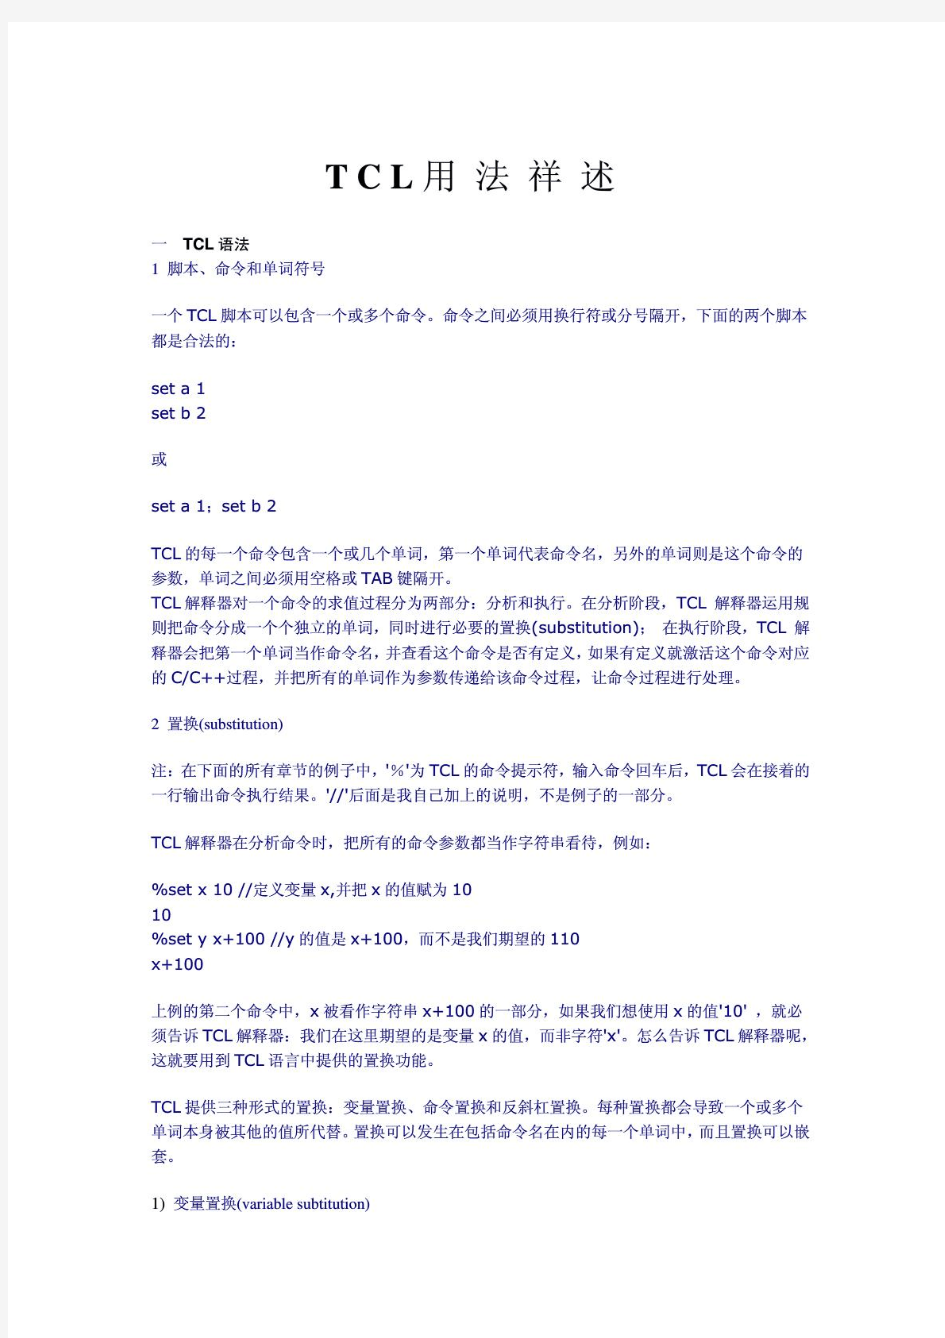 tcl脚本语言中文详解(20140316100933)